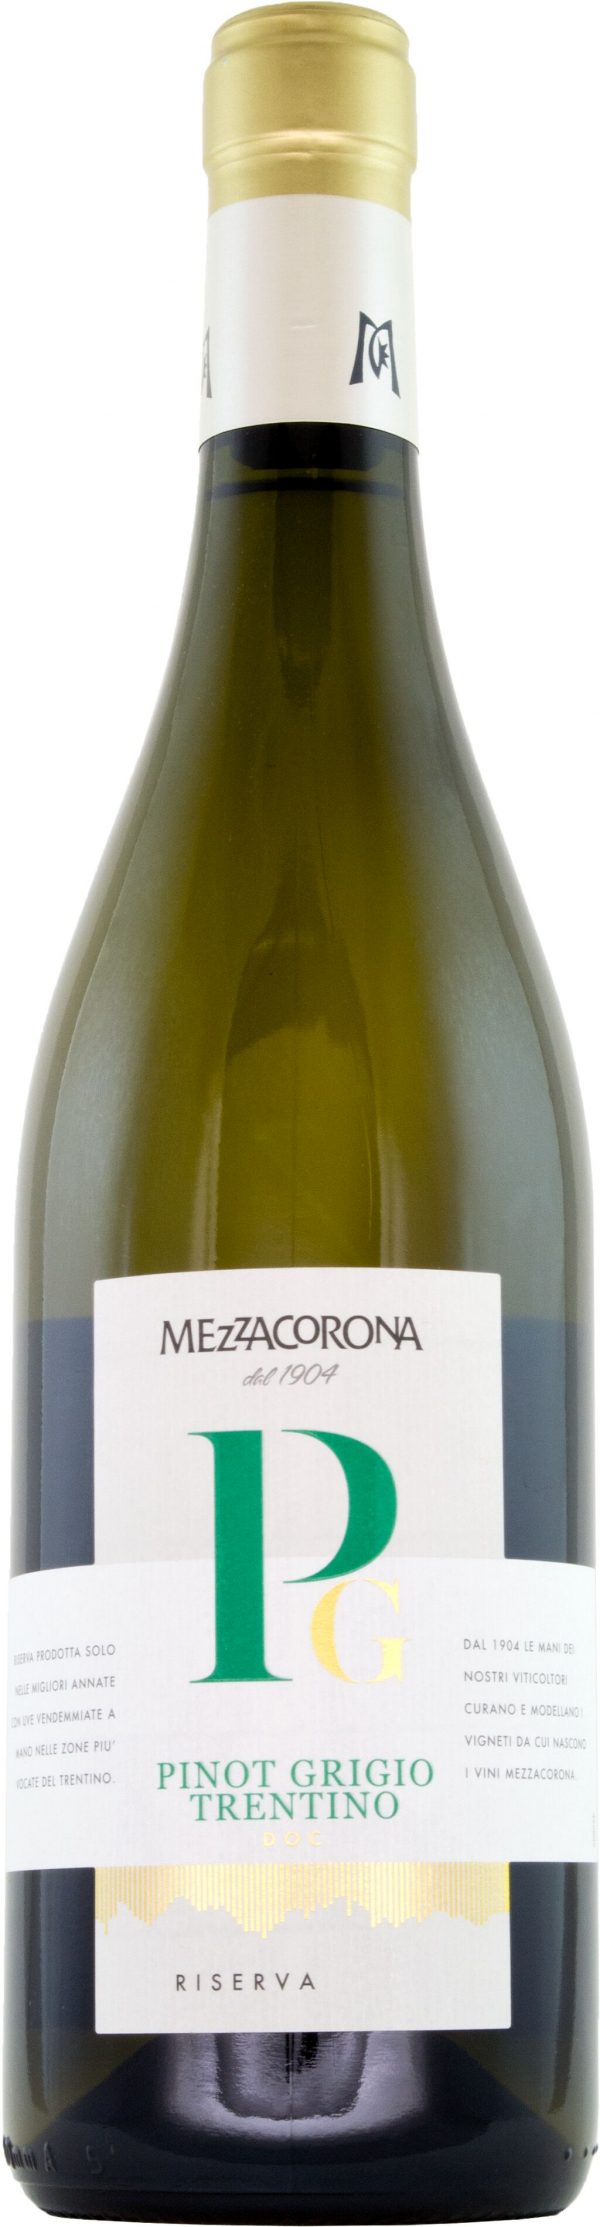 Mezzacorona Pinot Grigio Riserva